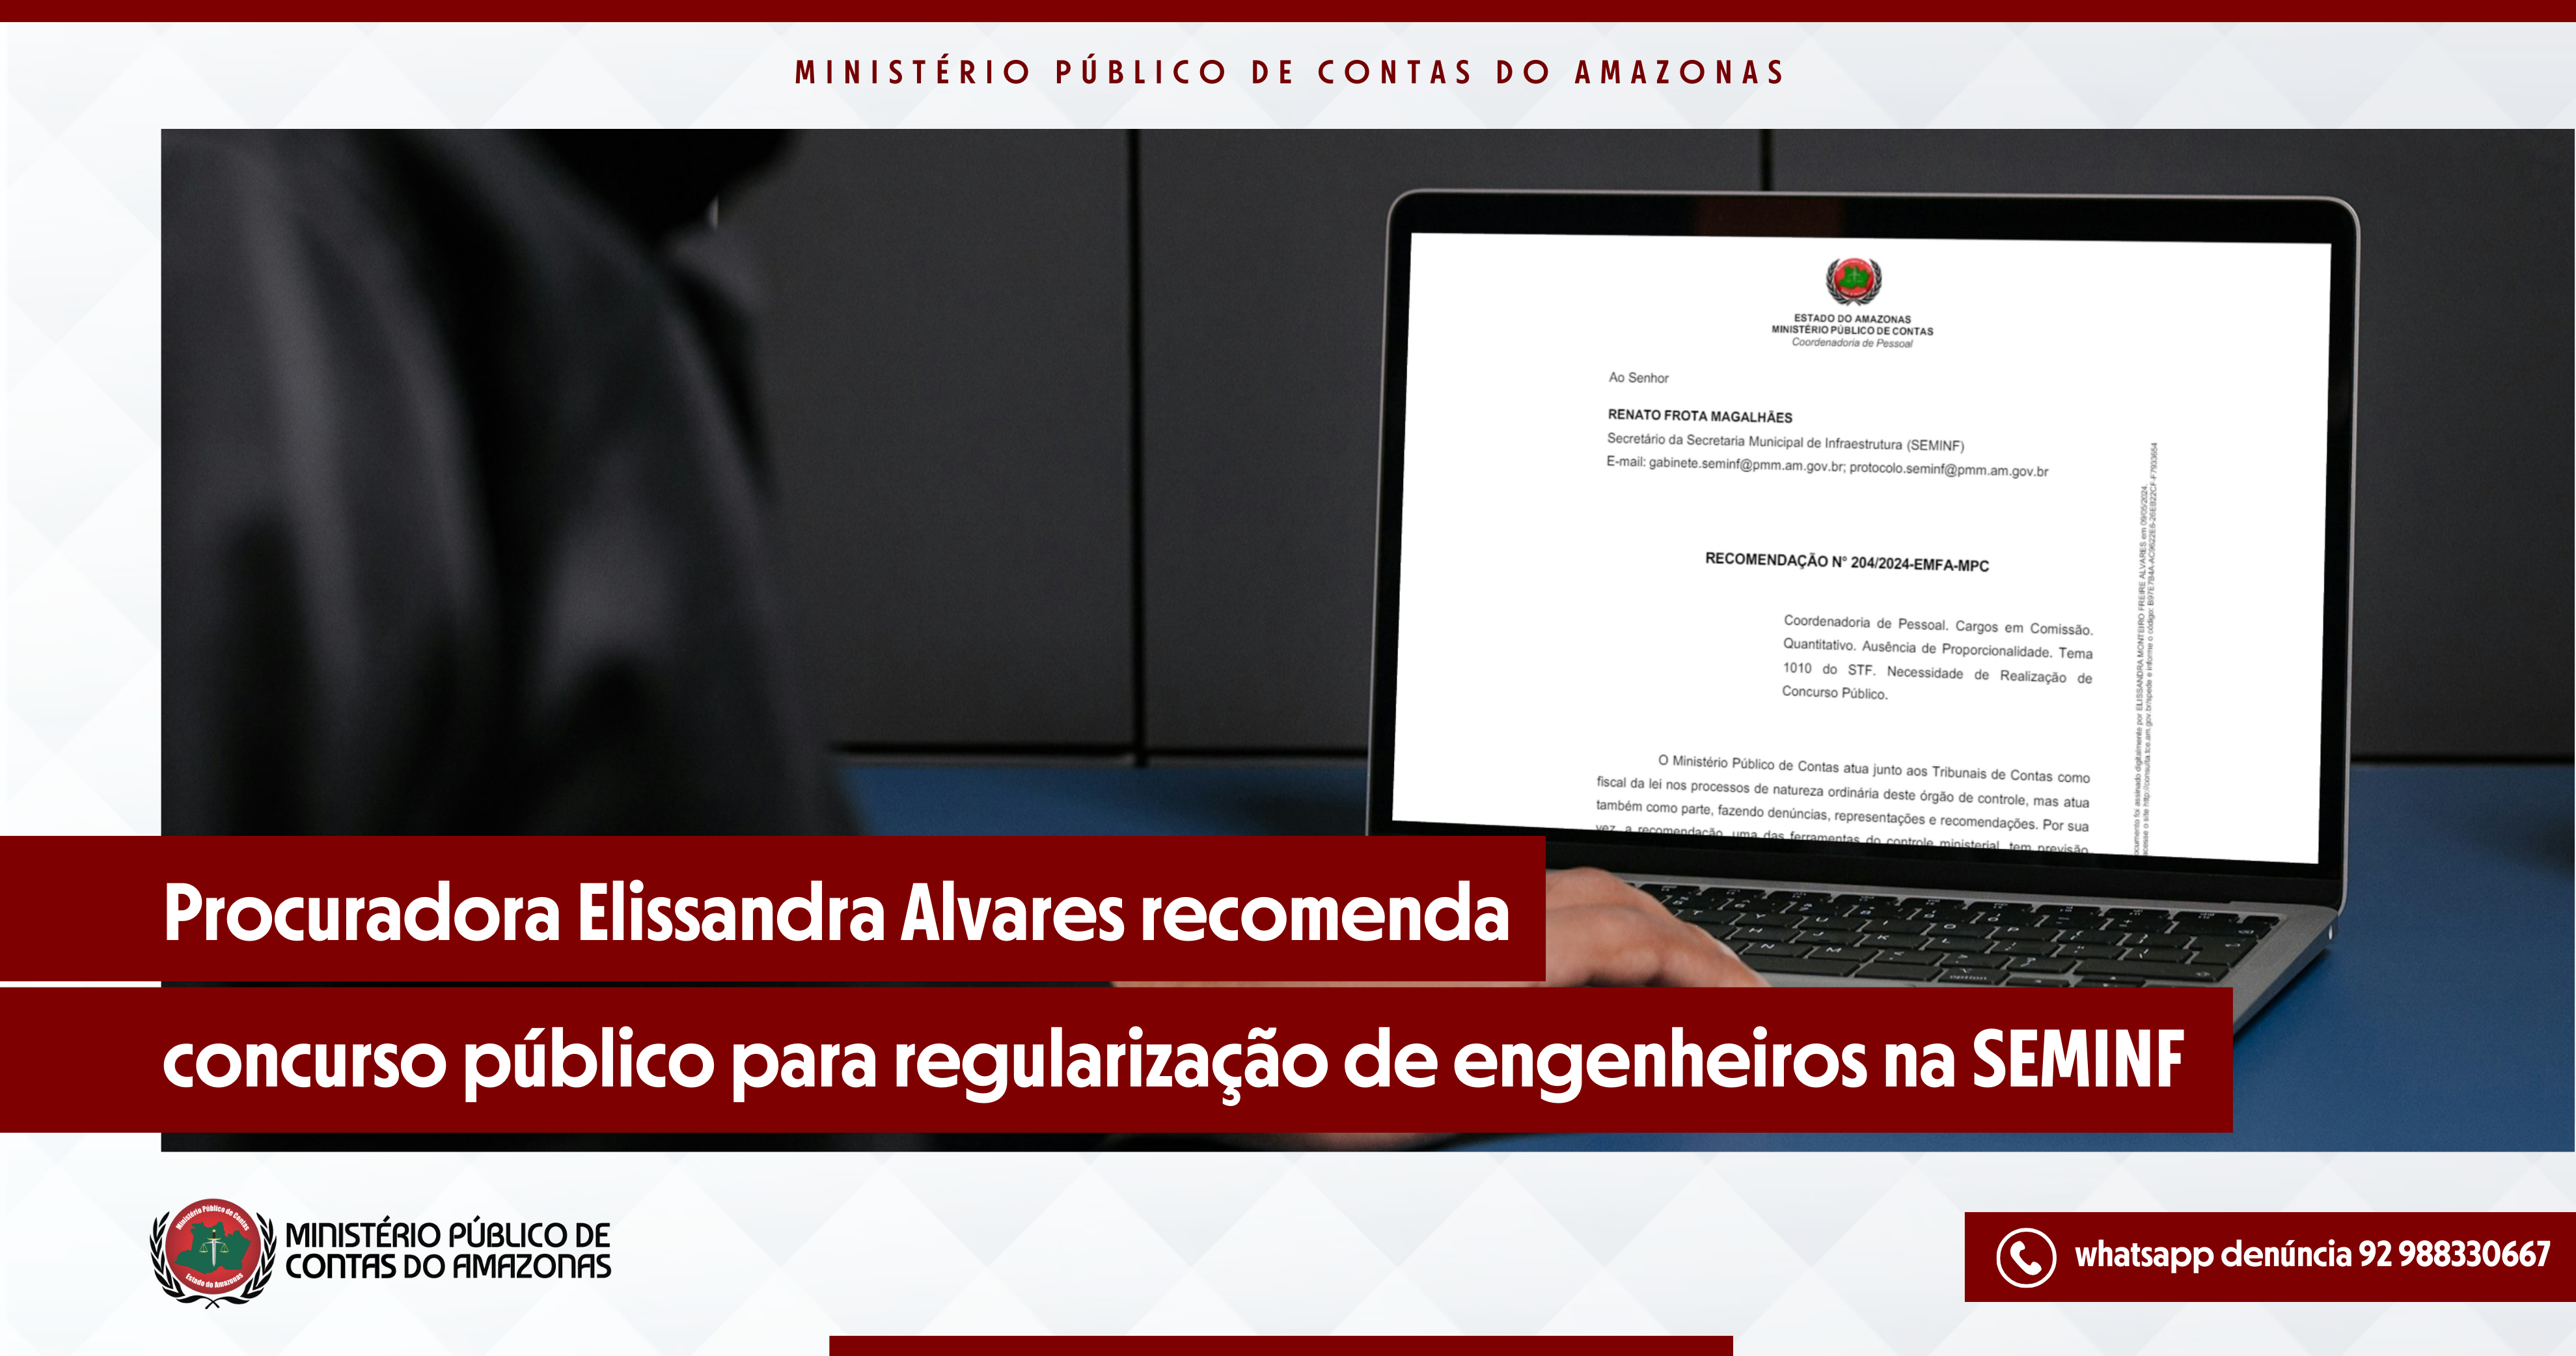 Procuradora Elissandra Alvares recomenda concurso público para regularização de engenheiros na SEMINF